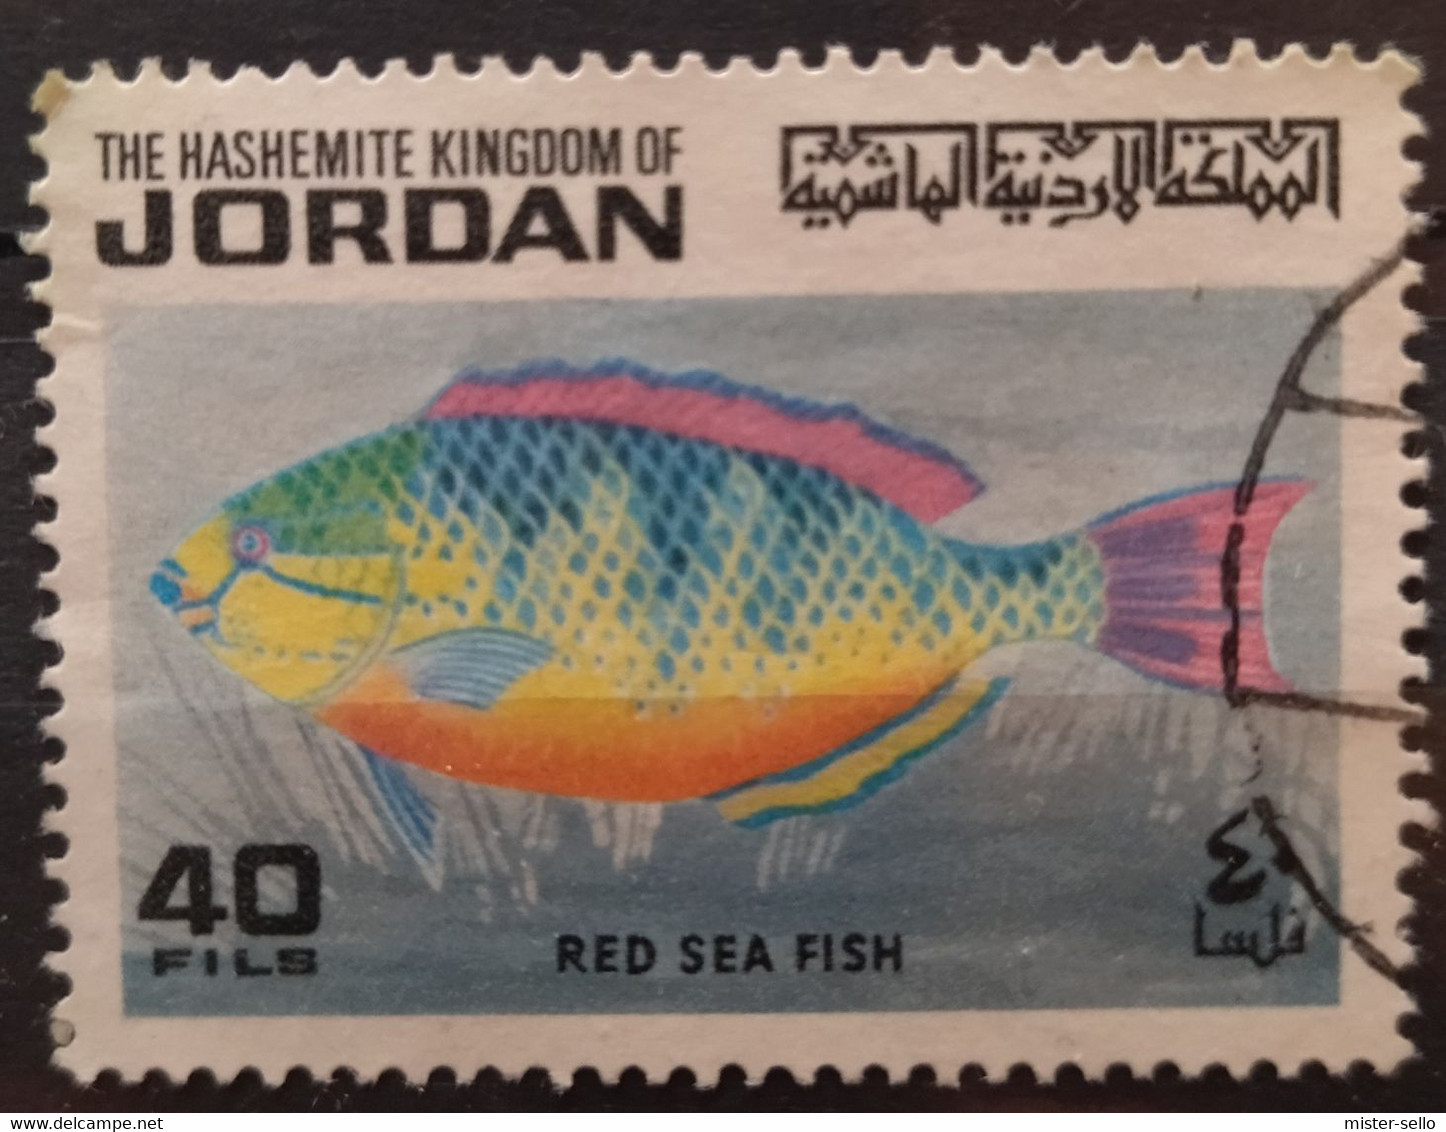 JORDANIA 1974 Red Sea Fish. USADO - USED. - Jordanie